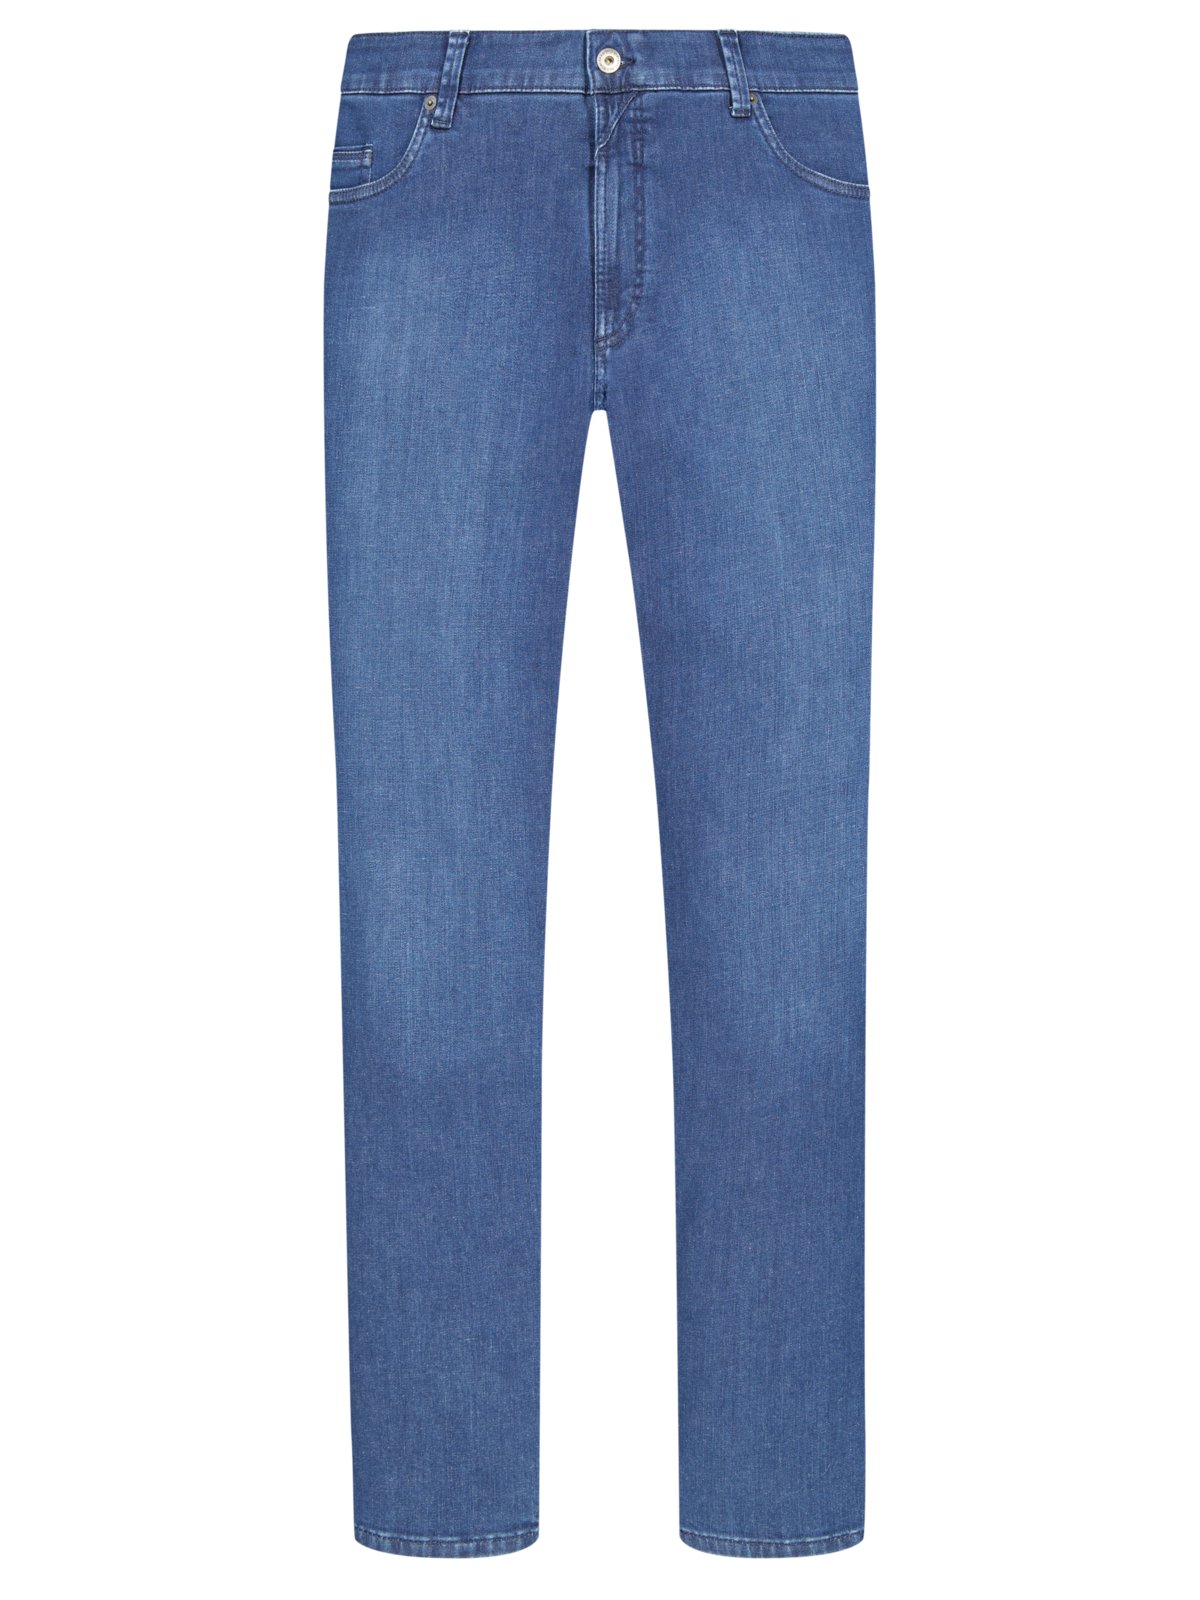 Eurex 5-Pocket Jeans mit Kurzleib